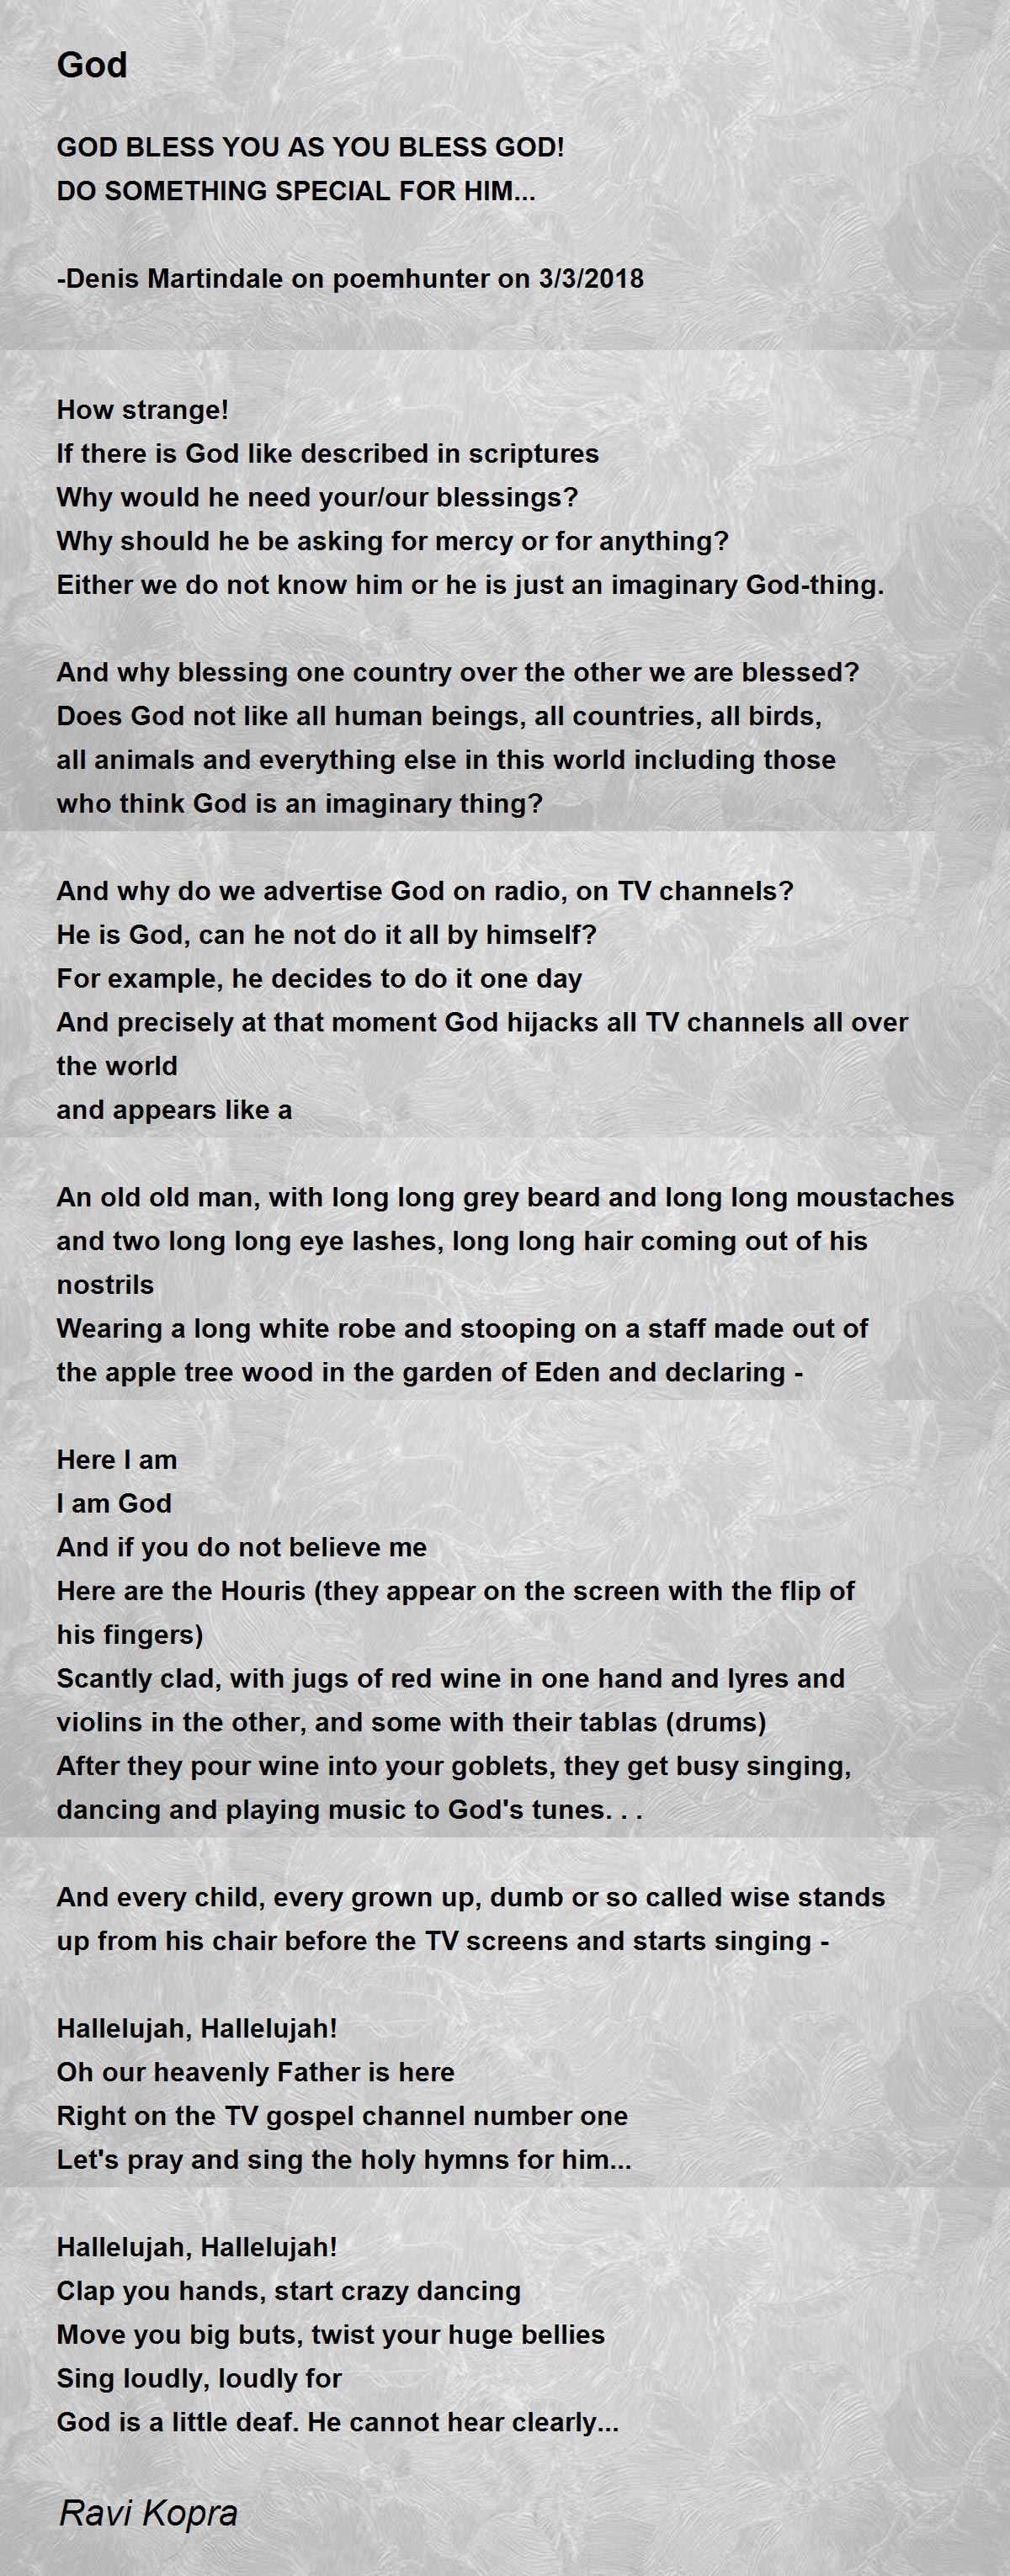 God - God Poem by Ravi Kopra